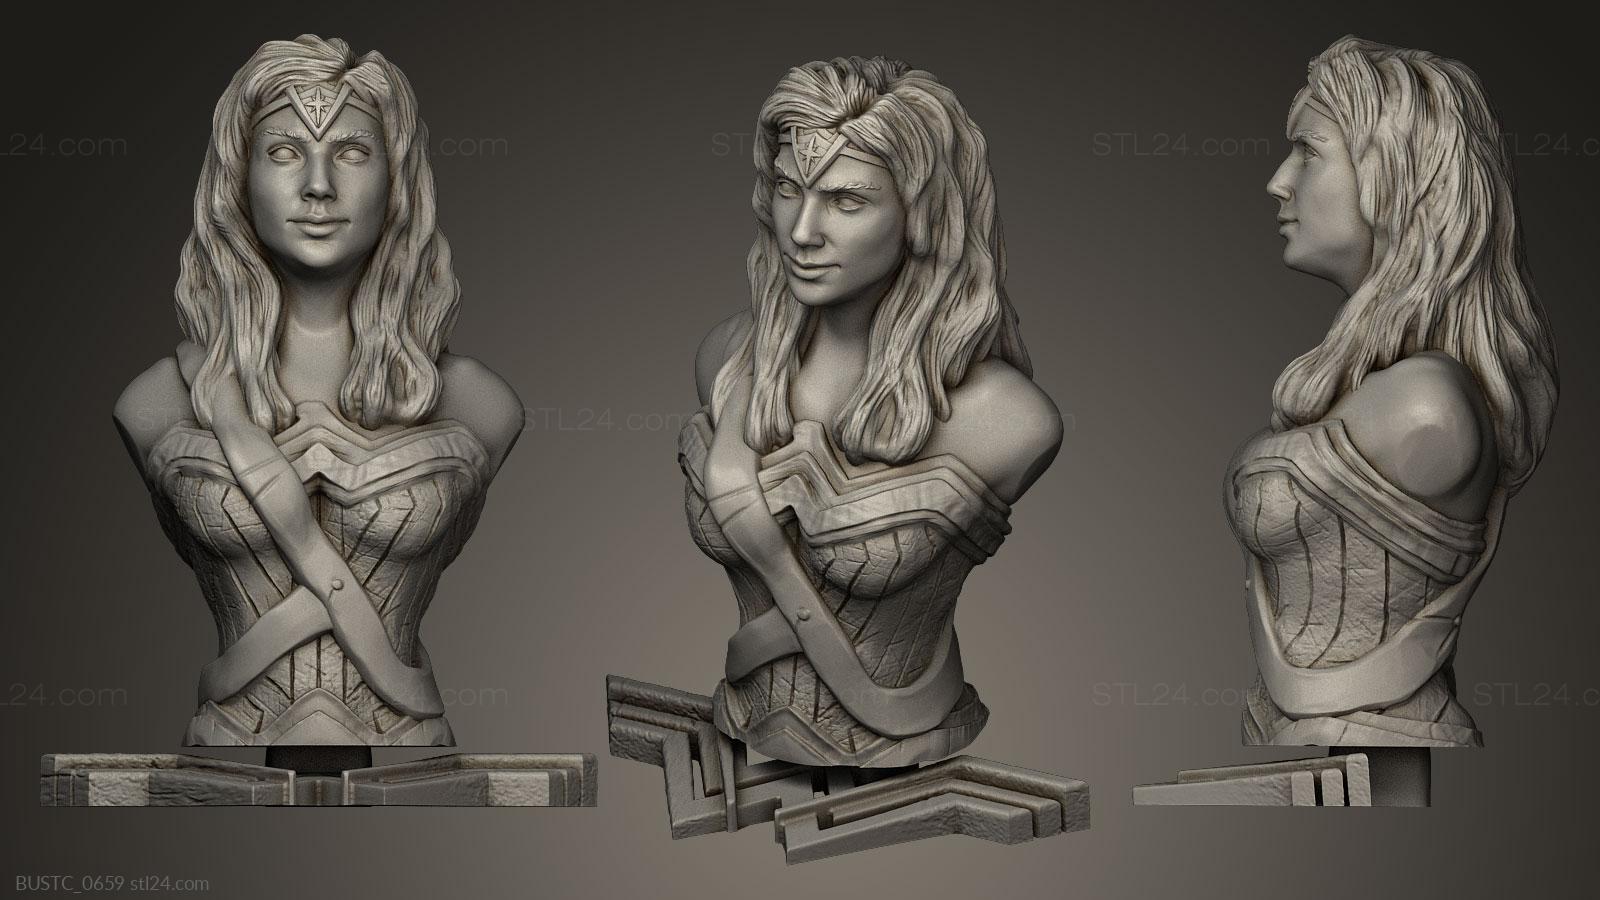 Бюсты и барельефы известных личностей (Удивительная женщина, BUSTC_0659) 3D модель для ЧПУ станка